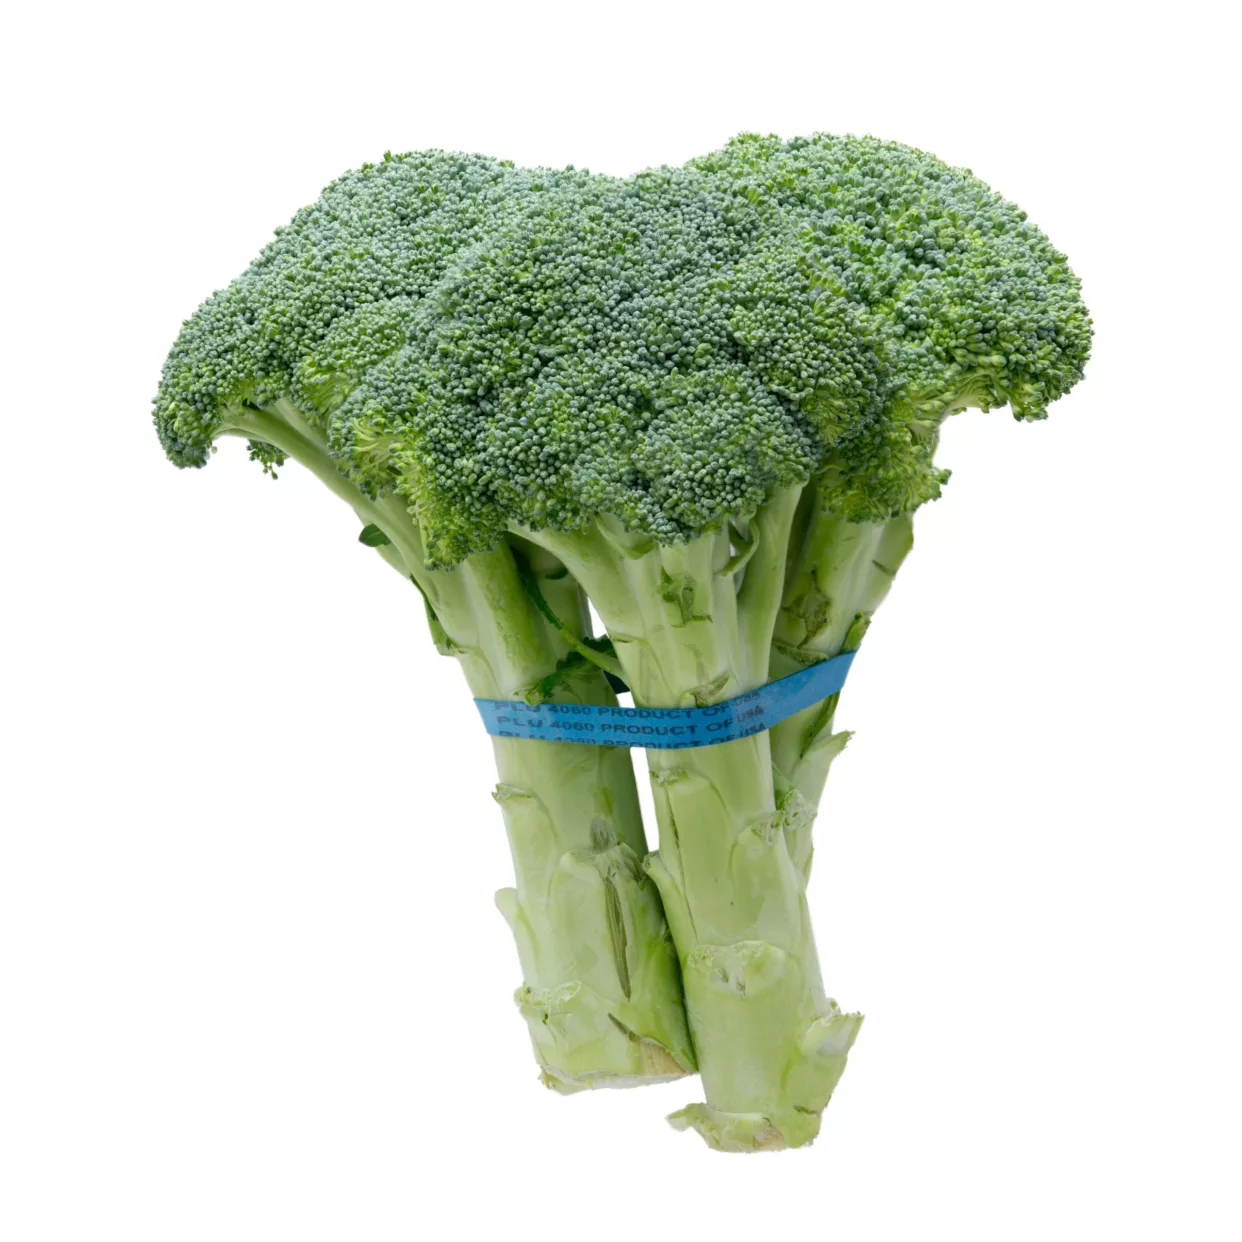 Broccoli Bunch